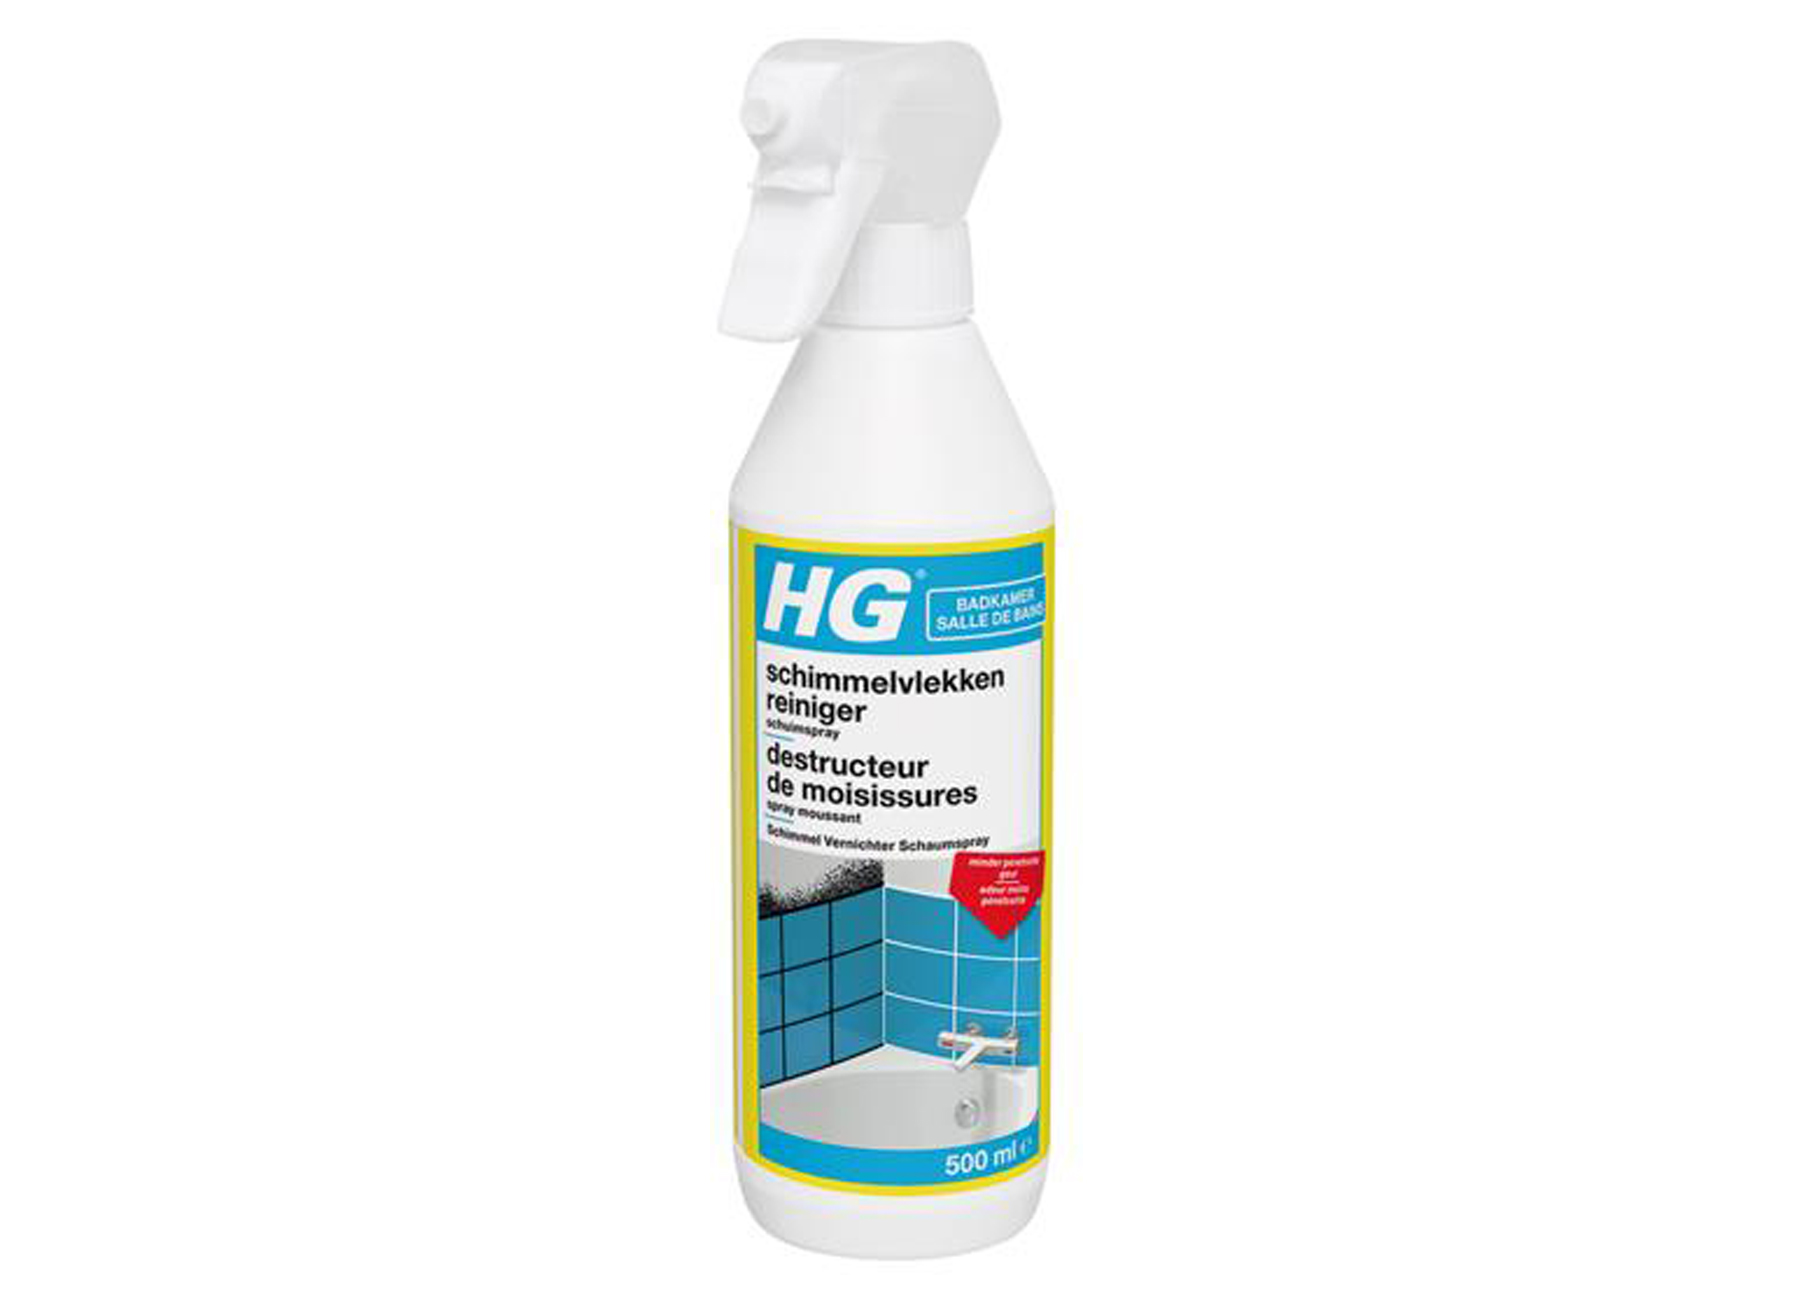 HG spray moussant destructeur de moisissures 416B